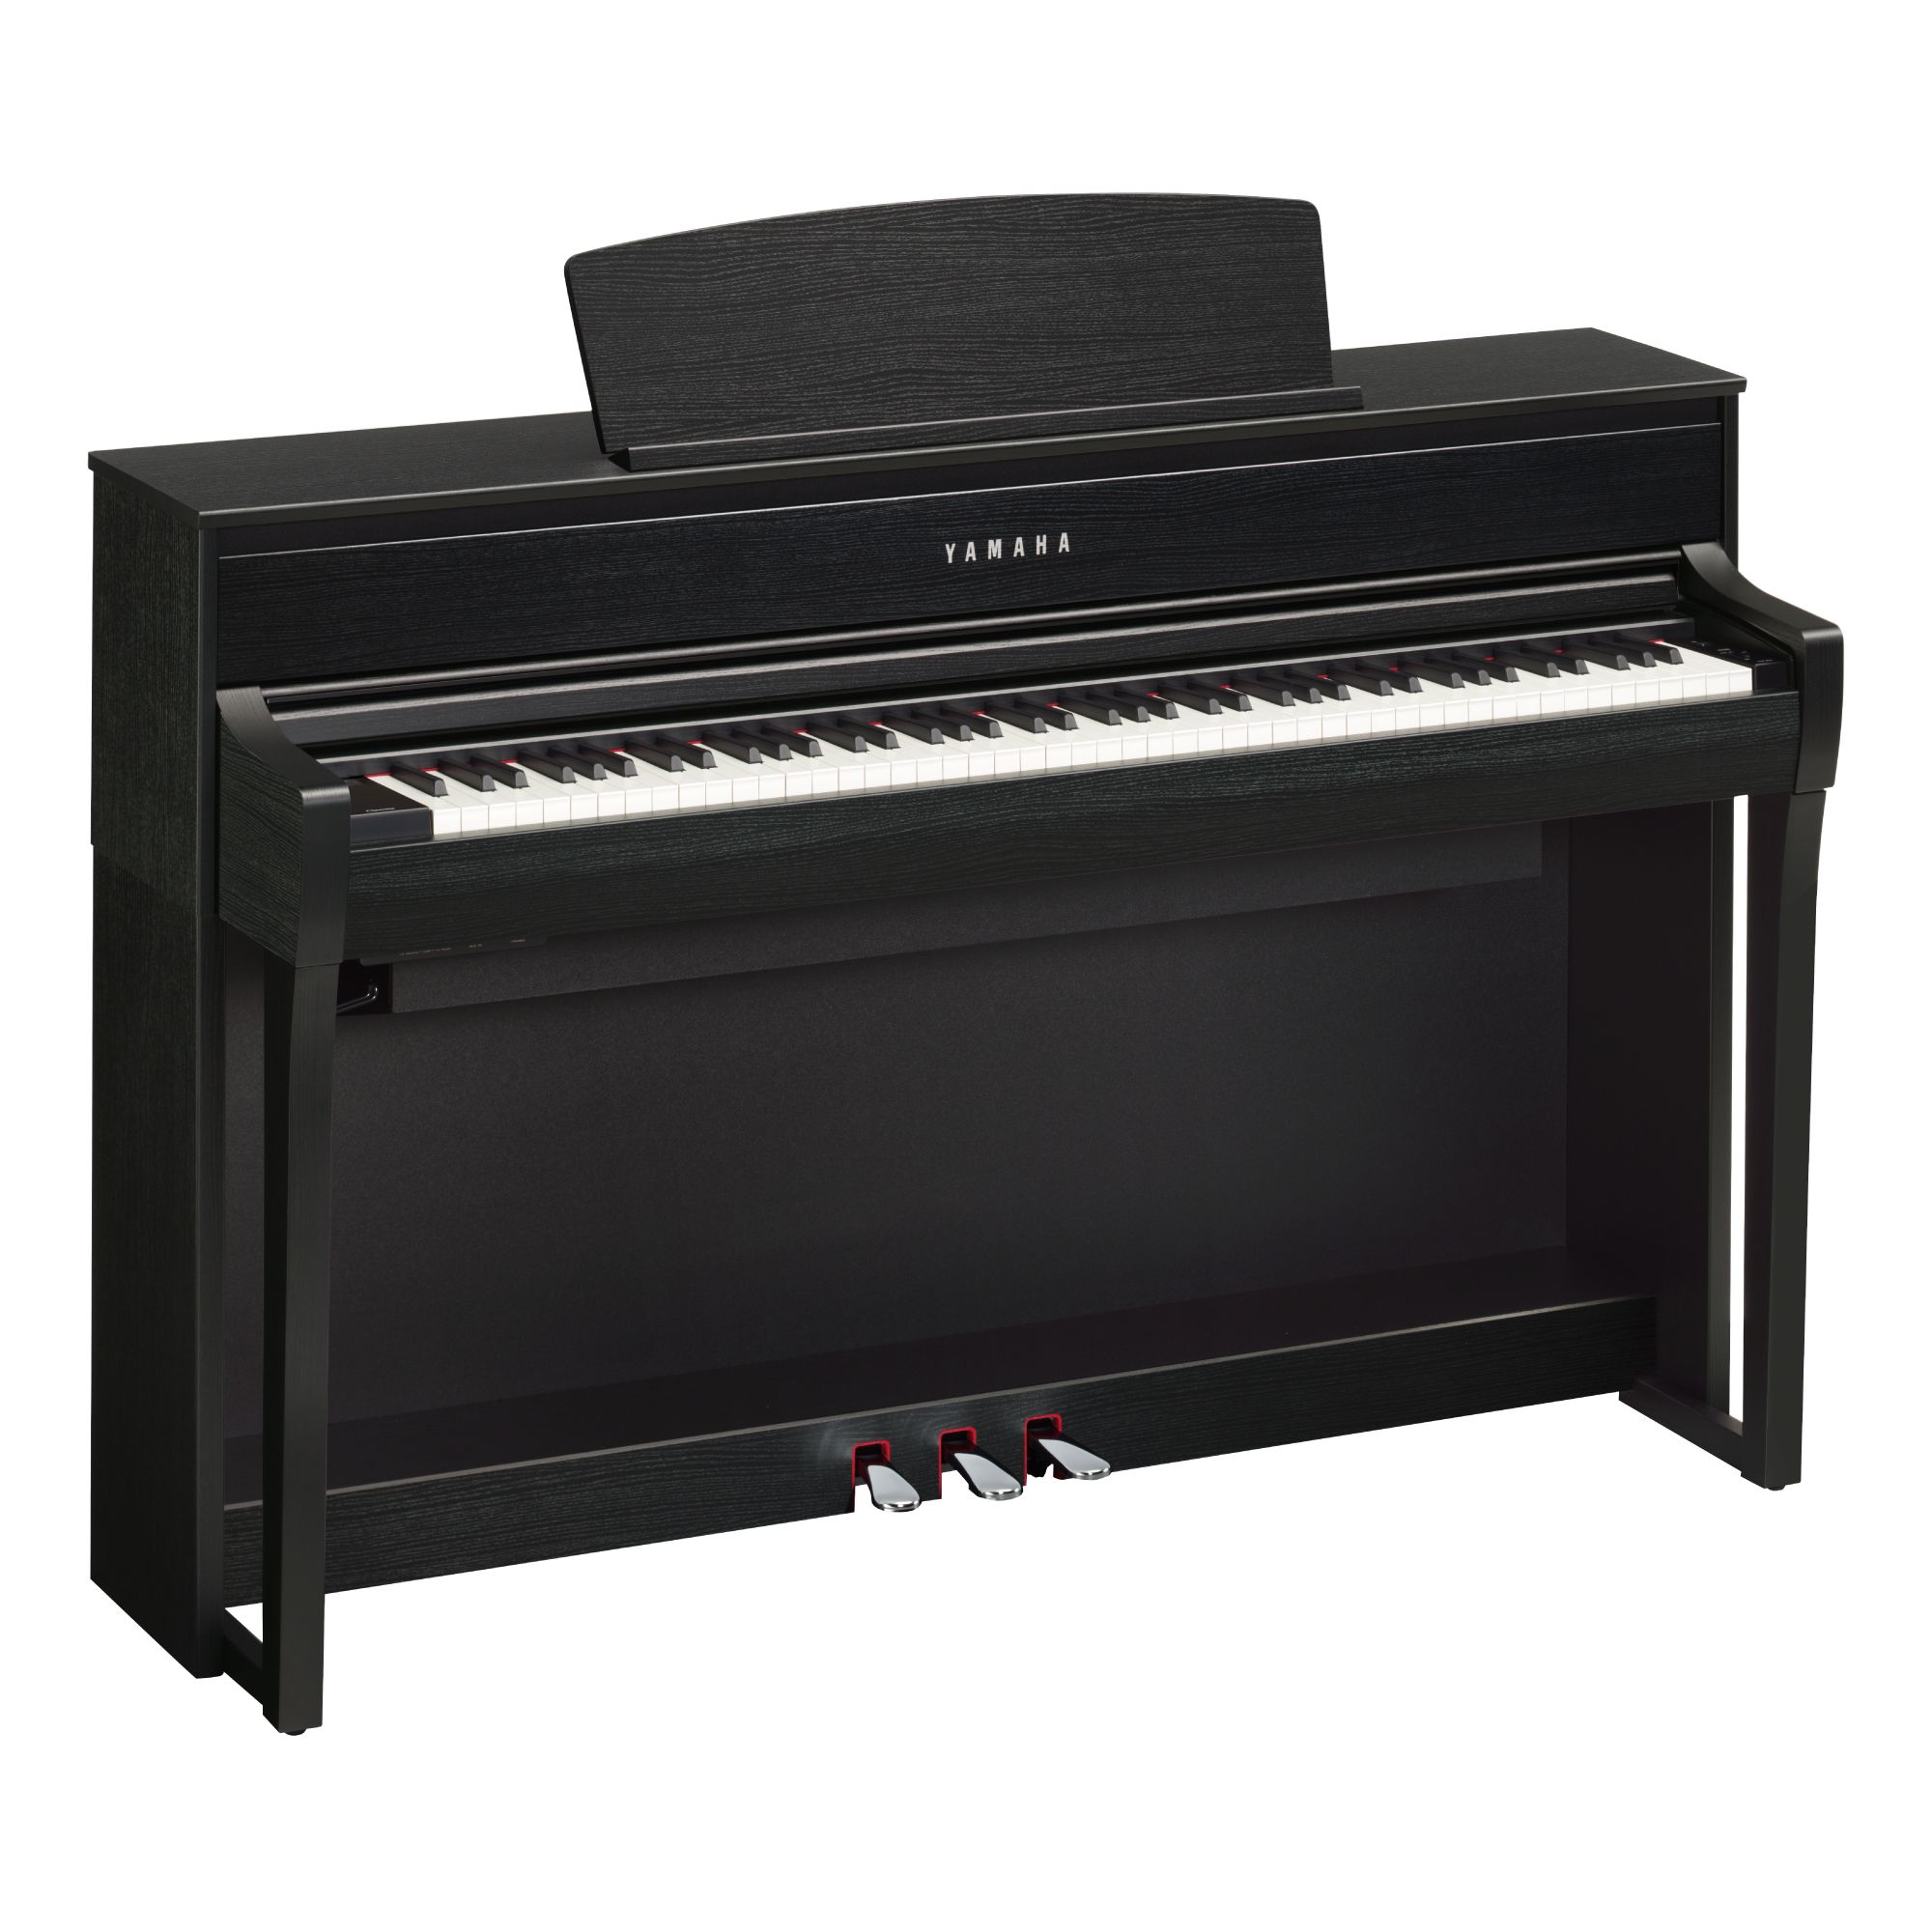 *YAMAHAデジタルピアノ・クラビノーバCLP-700シリーズ YAMAHAデジタルピアノが待望のモデルチェンジ！ 長年大人気を誇るクラビノーバから、CLP-700シリーズが新たに発売となりました。 こちらの記事では、店頭展示中のCLP-775のご紹介をさせて頂きます。 [!!※新型コロナウイルス […]